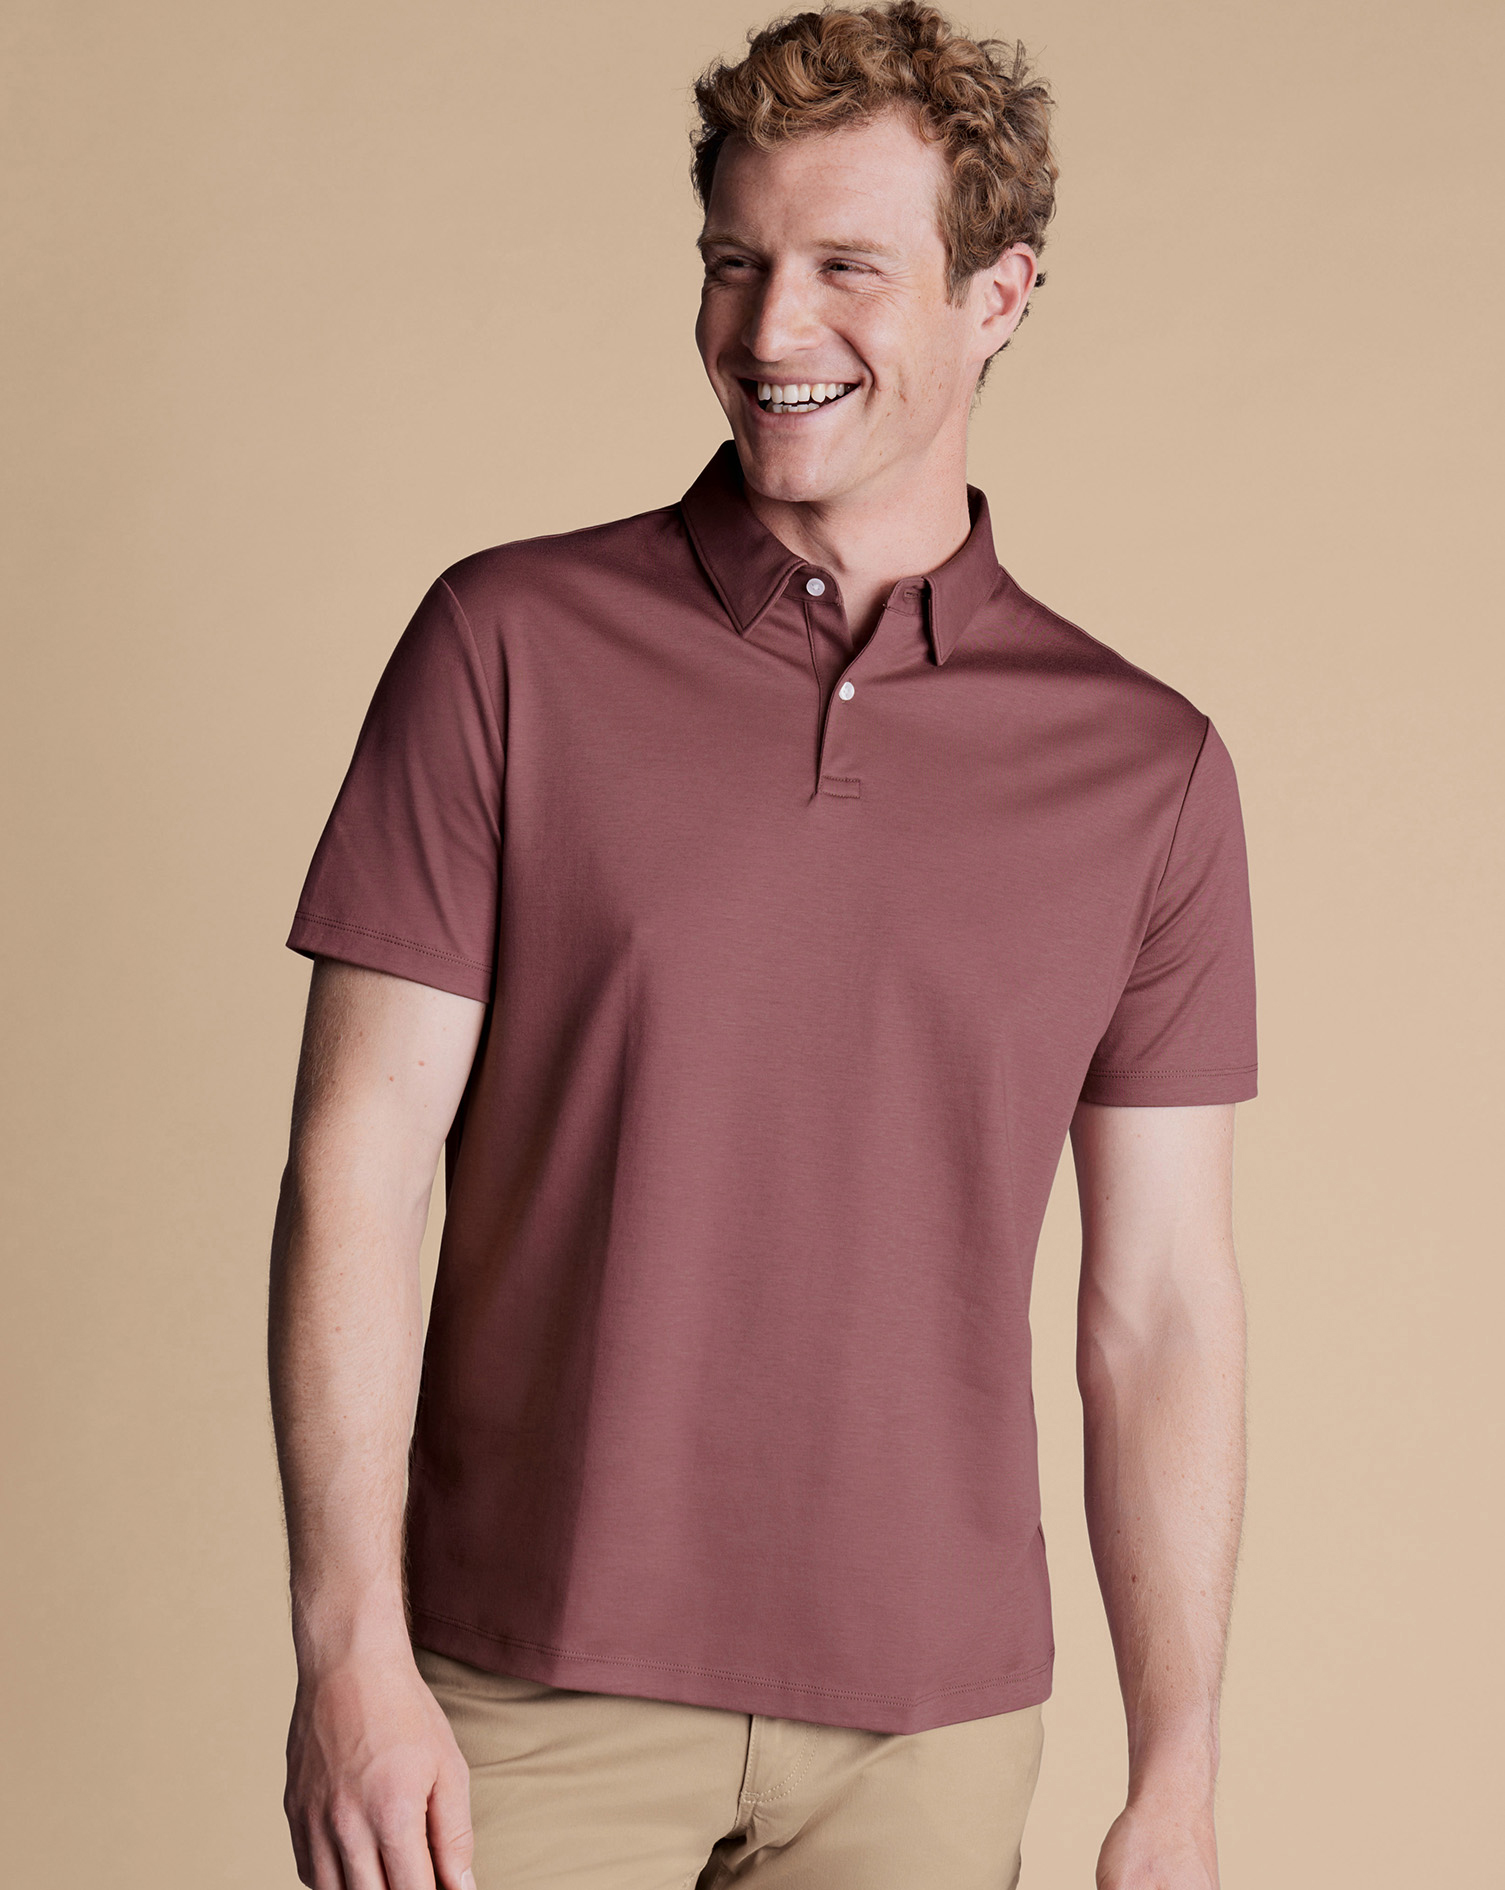 Men's Charles Tyrwhitt Smart Jersey Polo Shirt - Claret Pink Size XXXL Cotton
